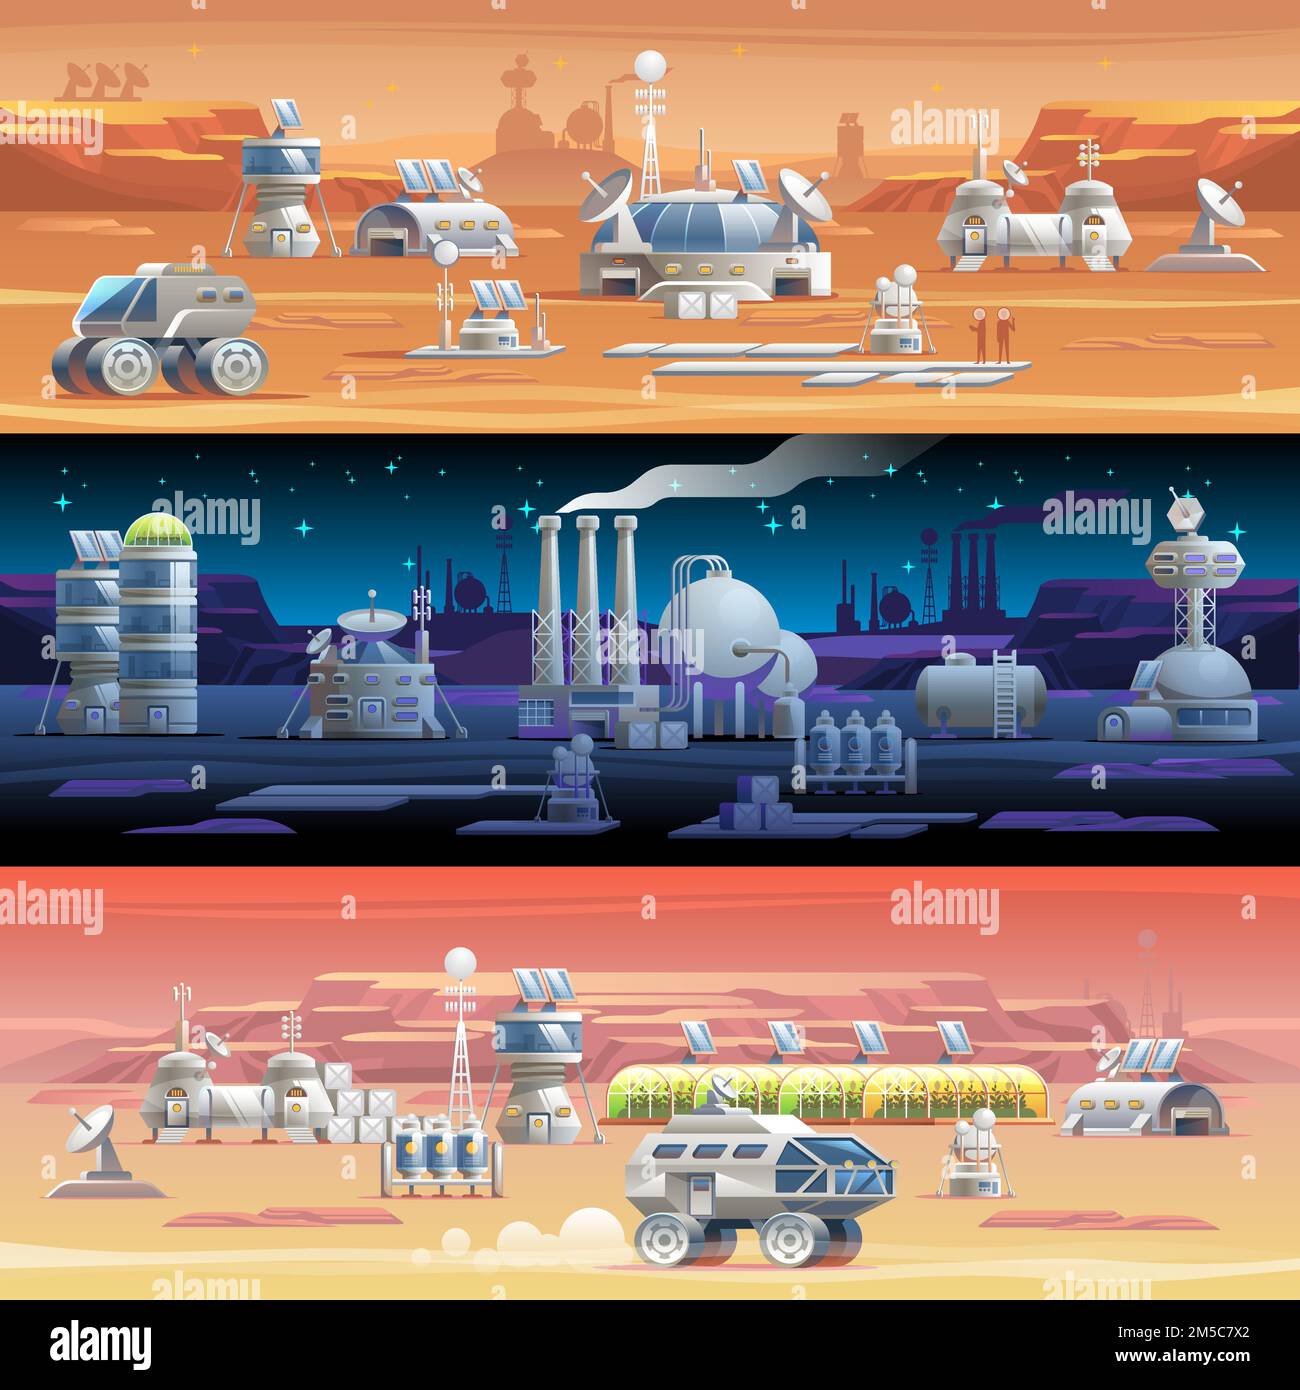 Colonizzazione Marte Astronomia colonizzazione dello spazio esplorazione del sistema solare le prime colonie Stazione astronauta del pianeta spaziale illustrazione vettoriale Illustrazione Vettoriale